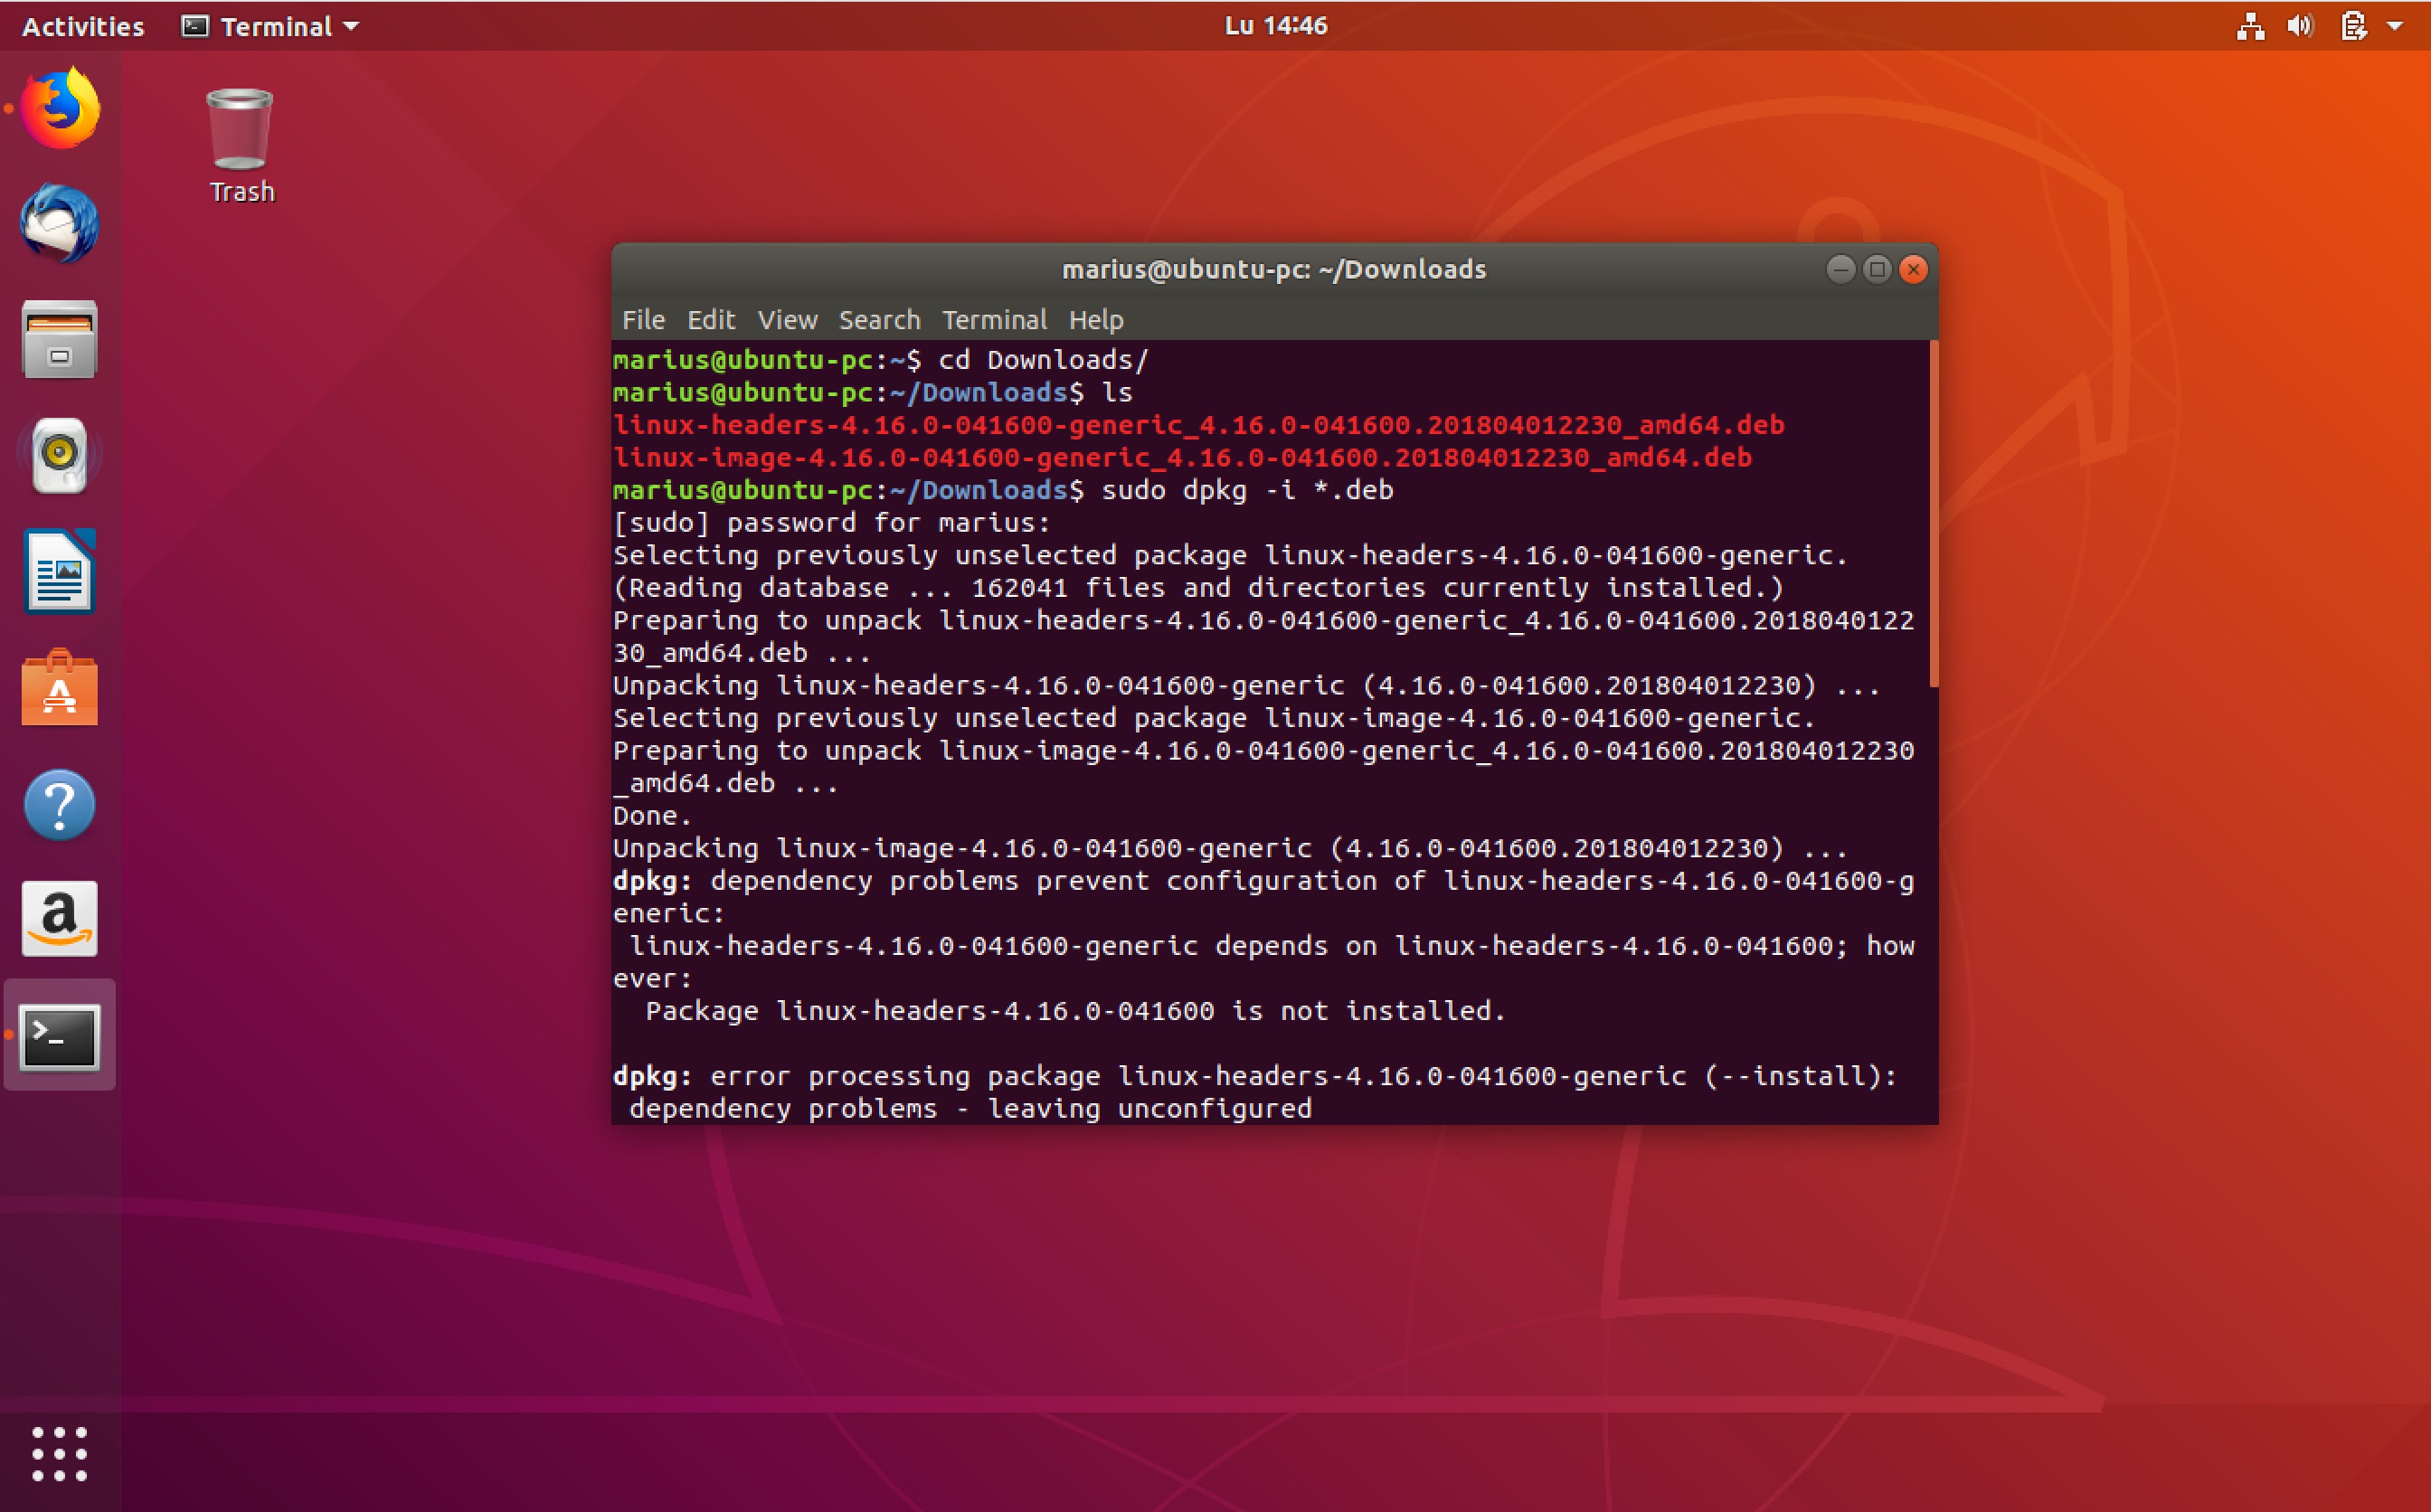 linux kernel 4.4